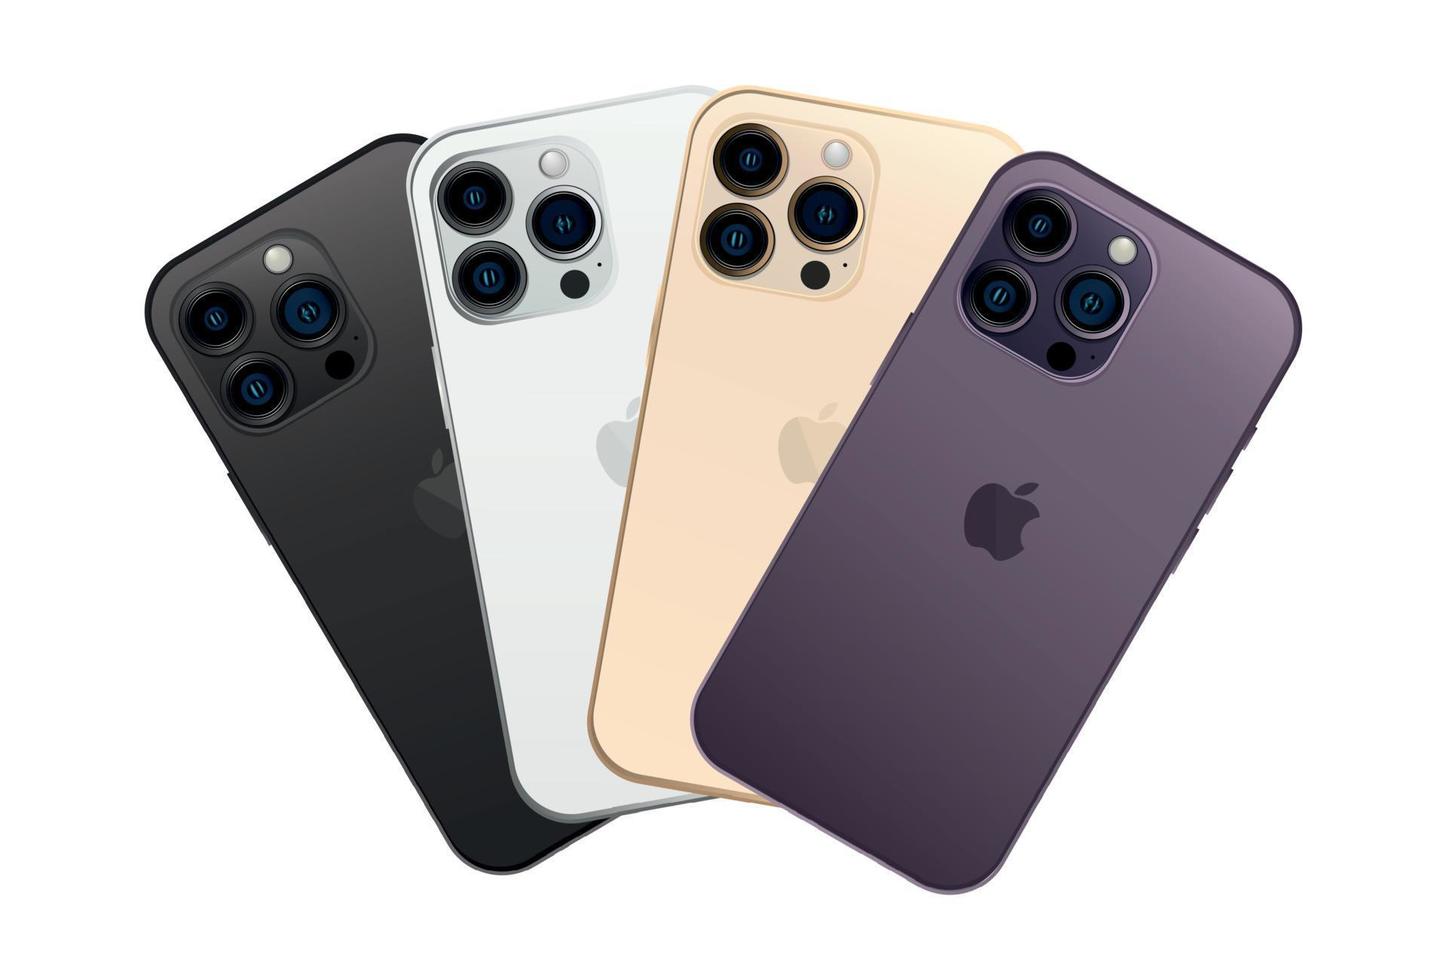 novo apple iphone 14 pro, gadget de smartphone moderno, conjunto de 4 peças novas cores originais - vetor